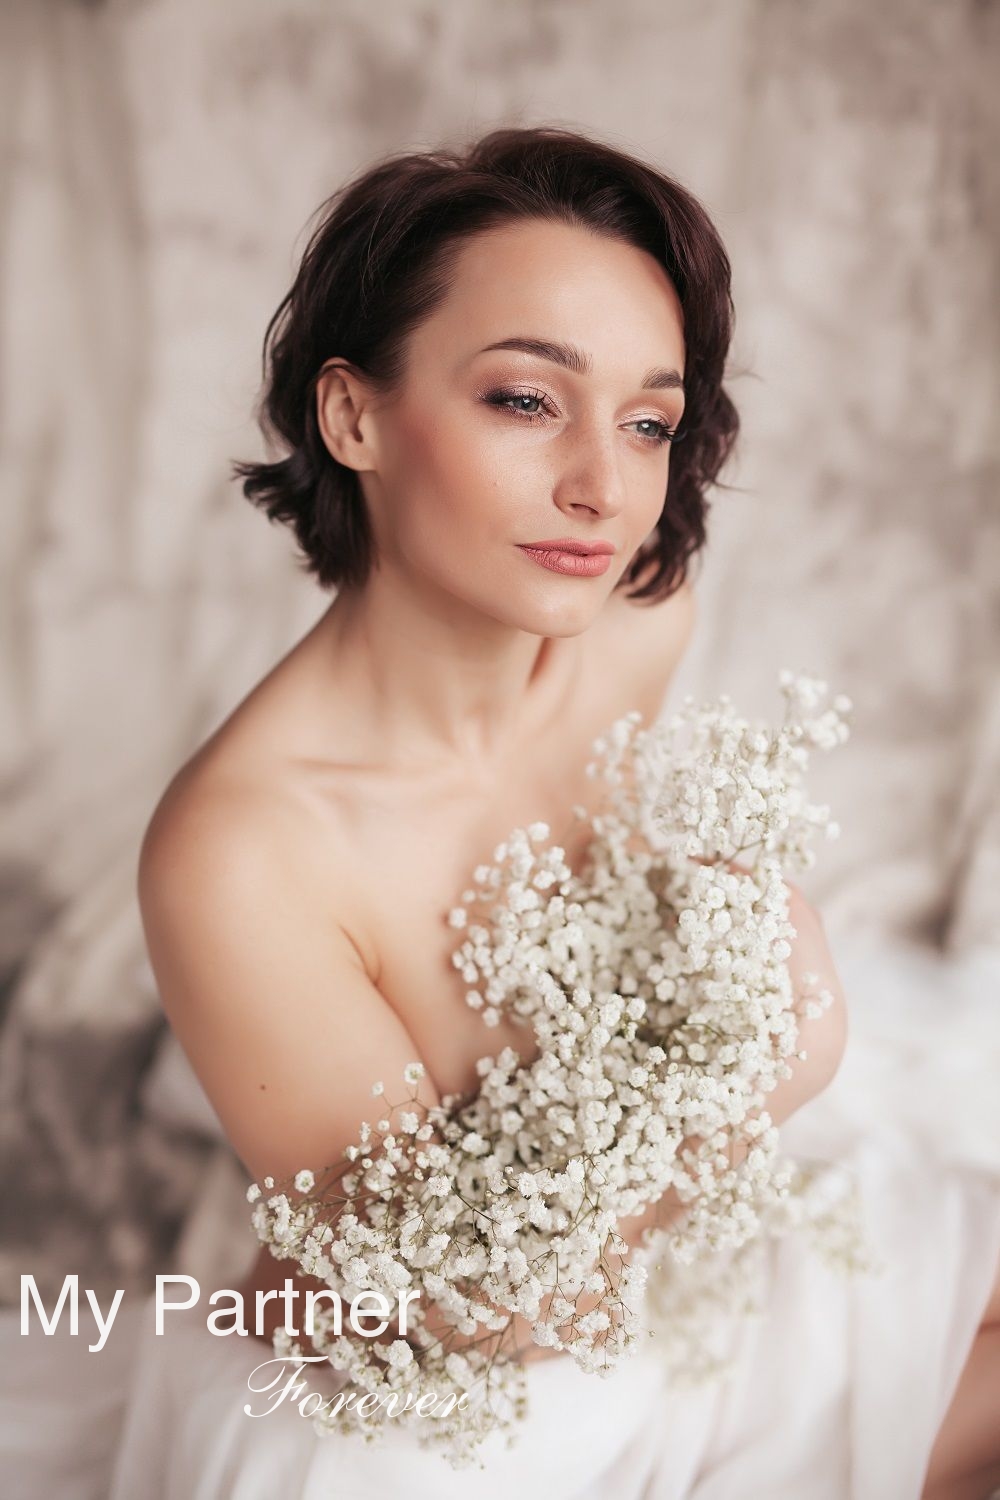 Dating Site to Meet Stunning Ukrainian Lady Darya from Zaporozhye, Ukraine